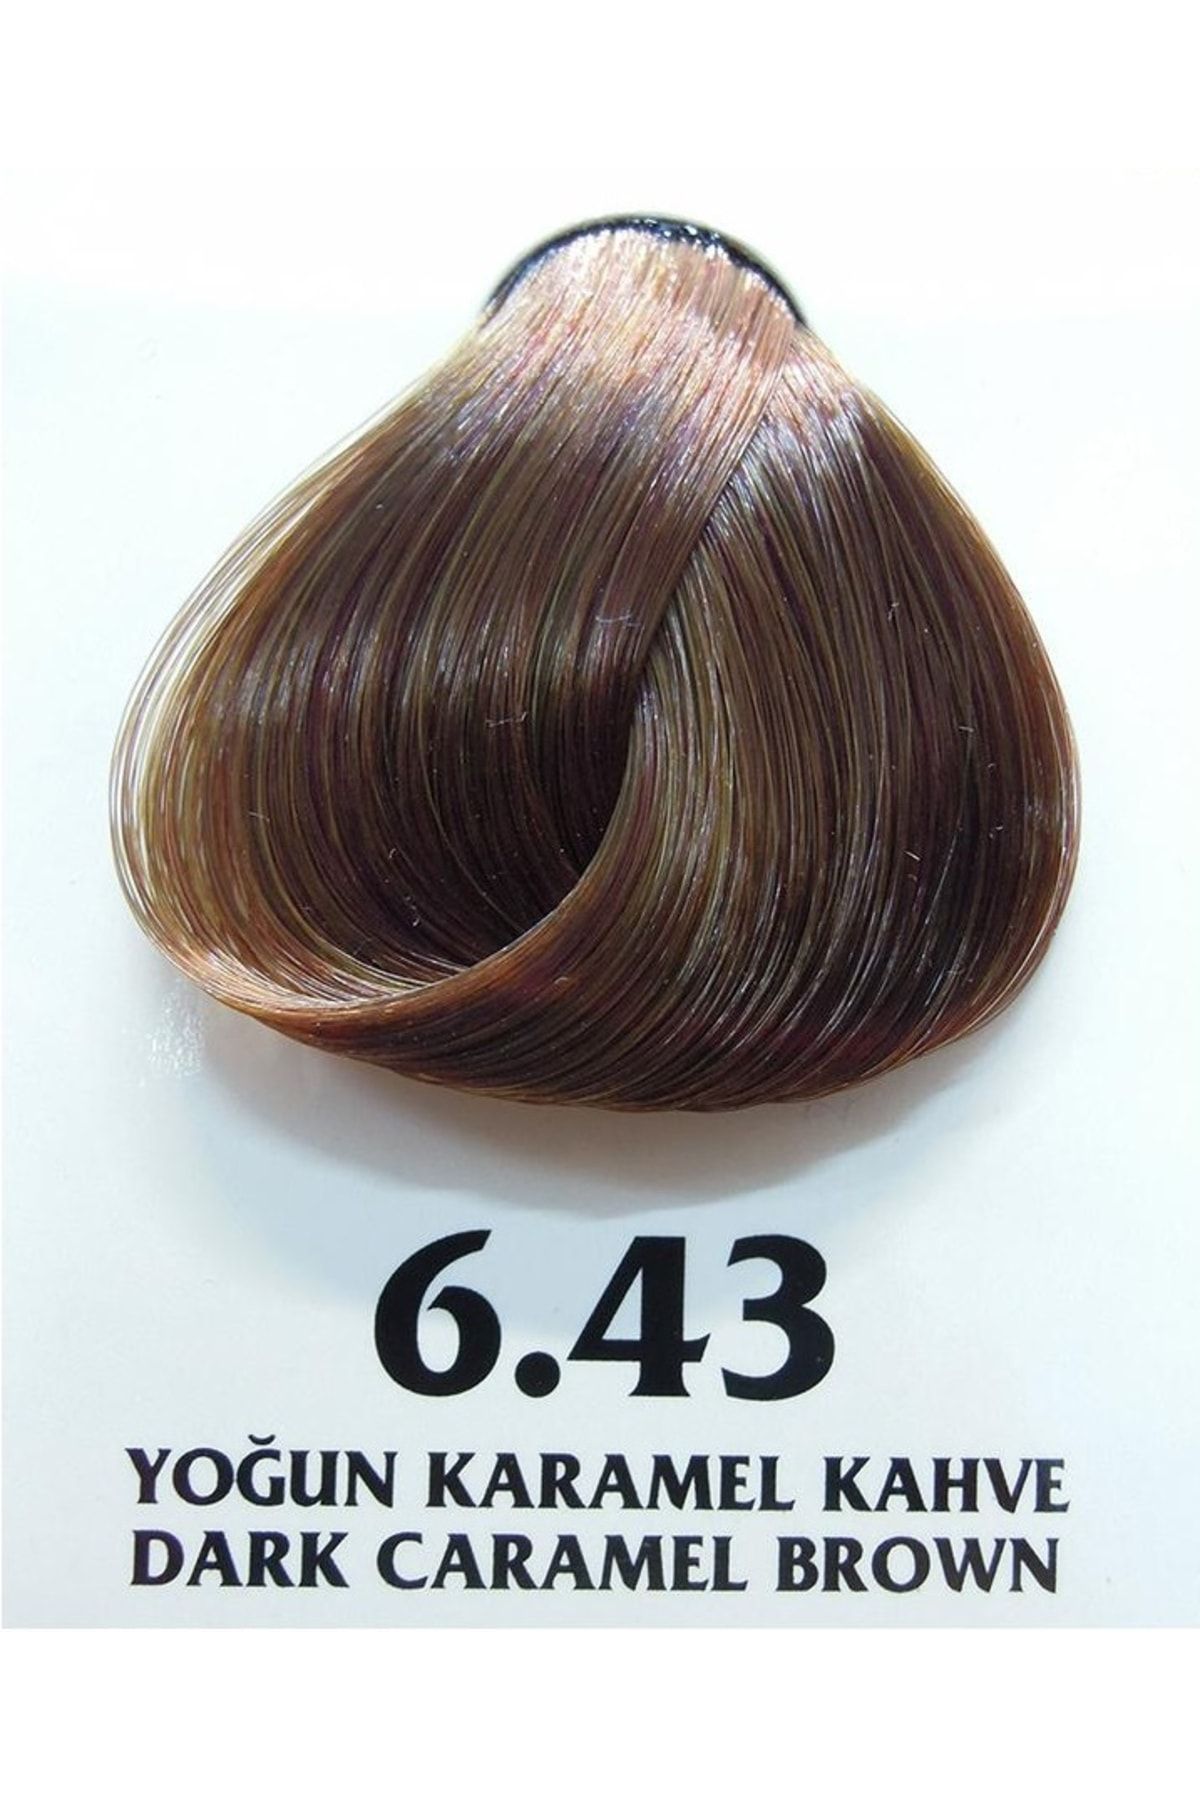 Clemency Farmavita Saç Boyası Yoğun Karamel Kahve 6.43 60gr.